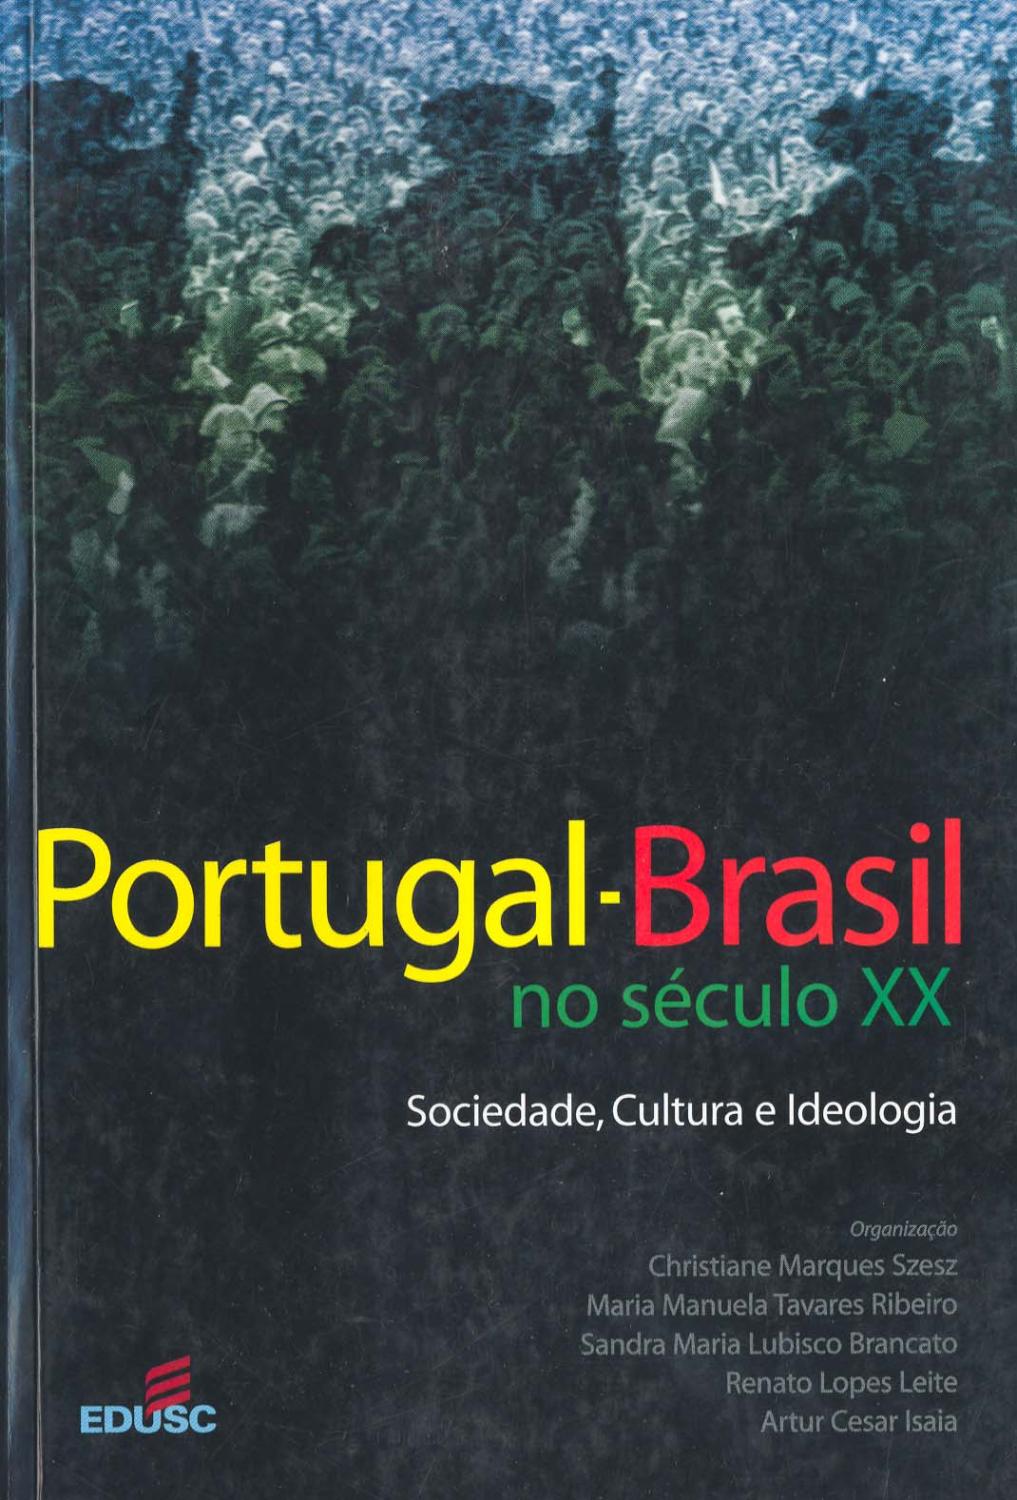 Portugal-Brasil no século XX : sociedade, cultura e ideologia. Colóquio Internacional (1: 2001 set. 24-26 : Curitiba, Br). -- ( História )